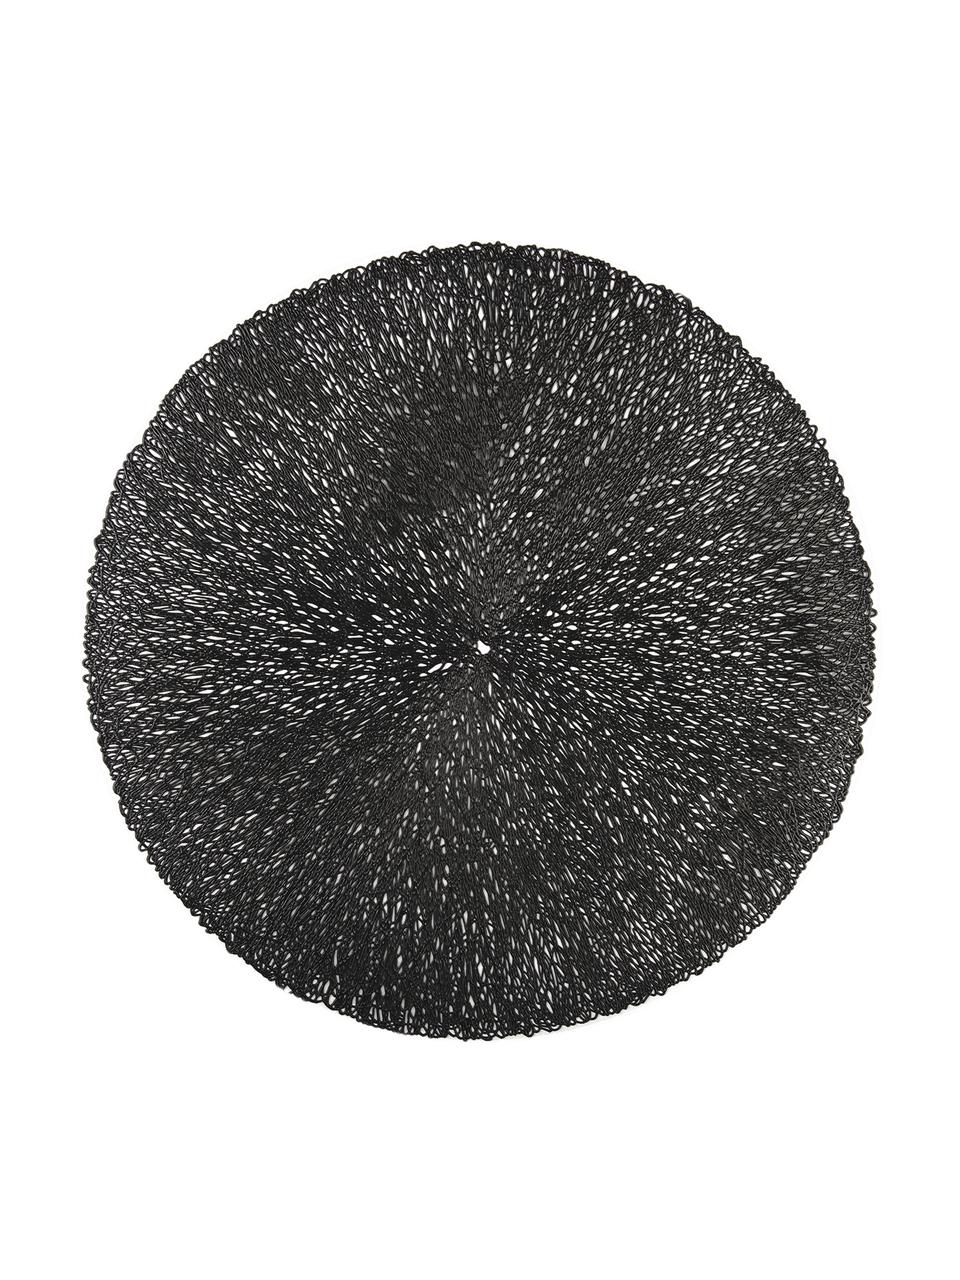 Okrągła podkładka z metalu Sous, 2 szt., Tworzywo sztuczne, Czarny, Ø 38 cm